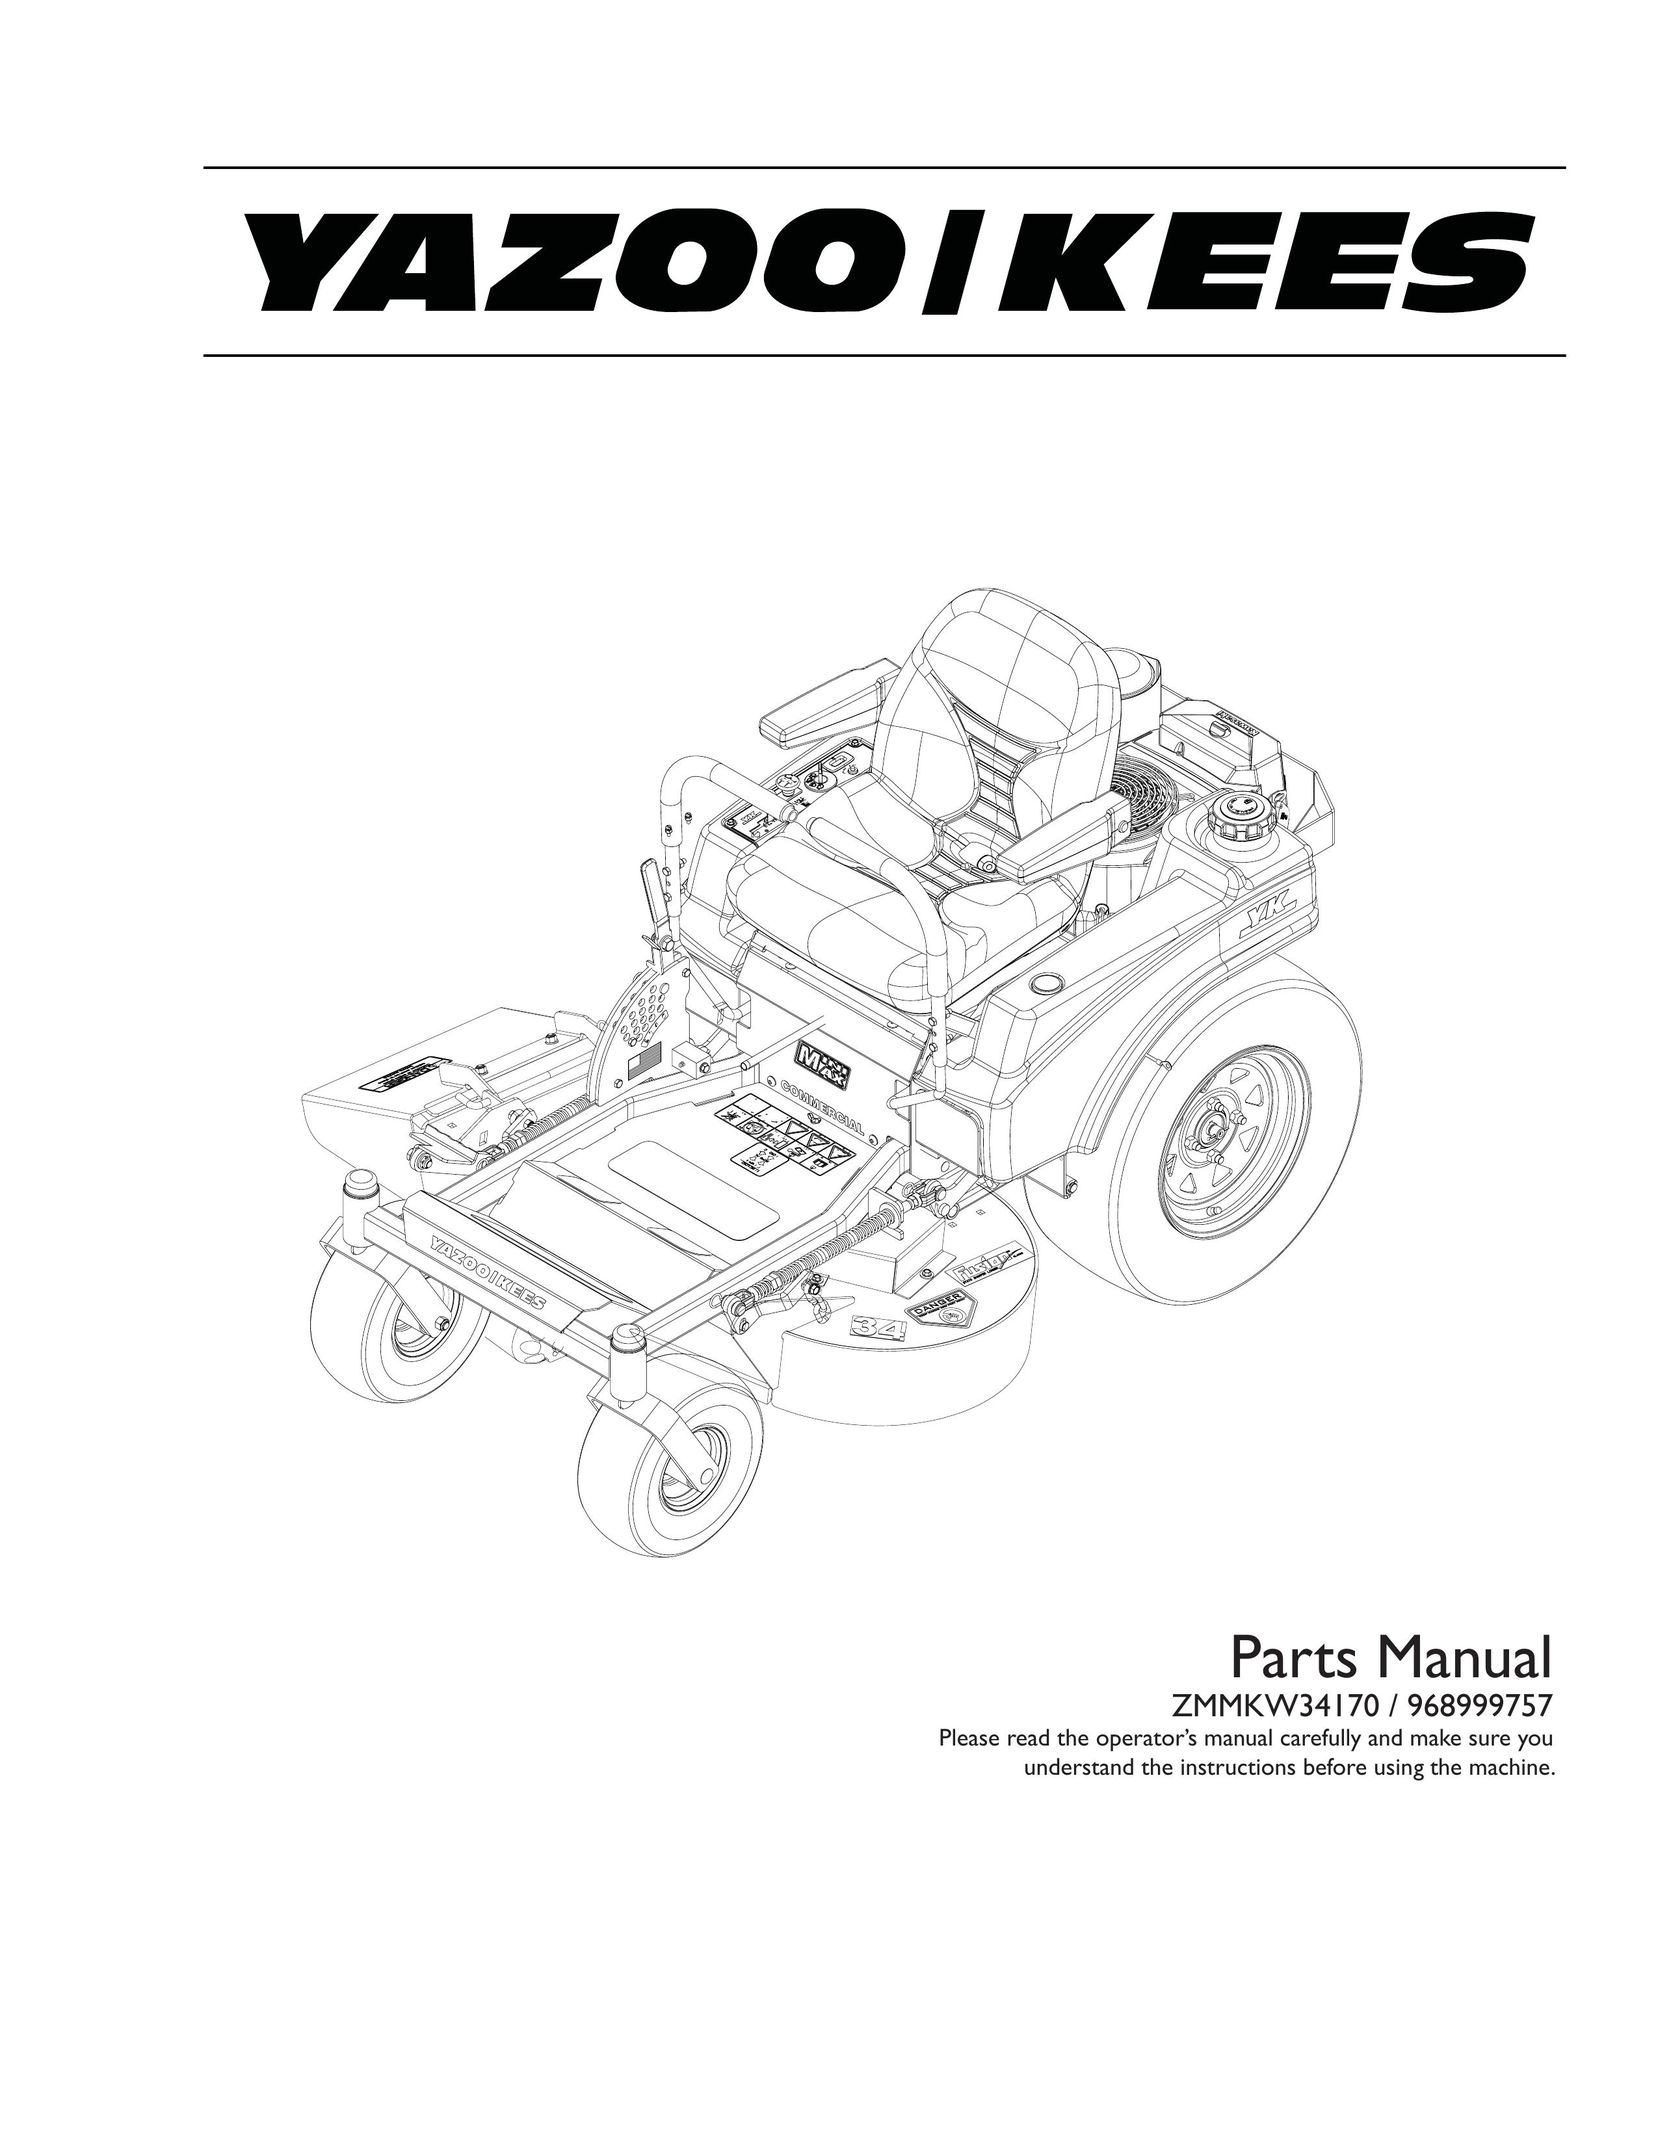 Yazoo/Kees ZMMKW34170 Power Supply User Manual